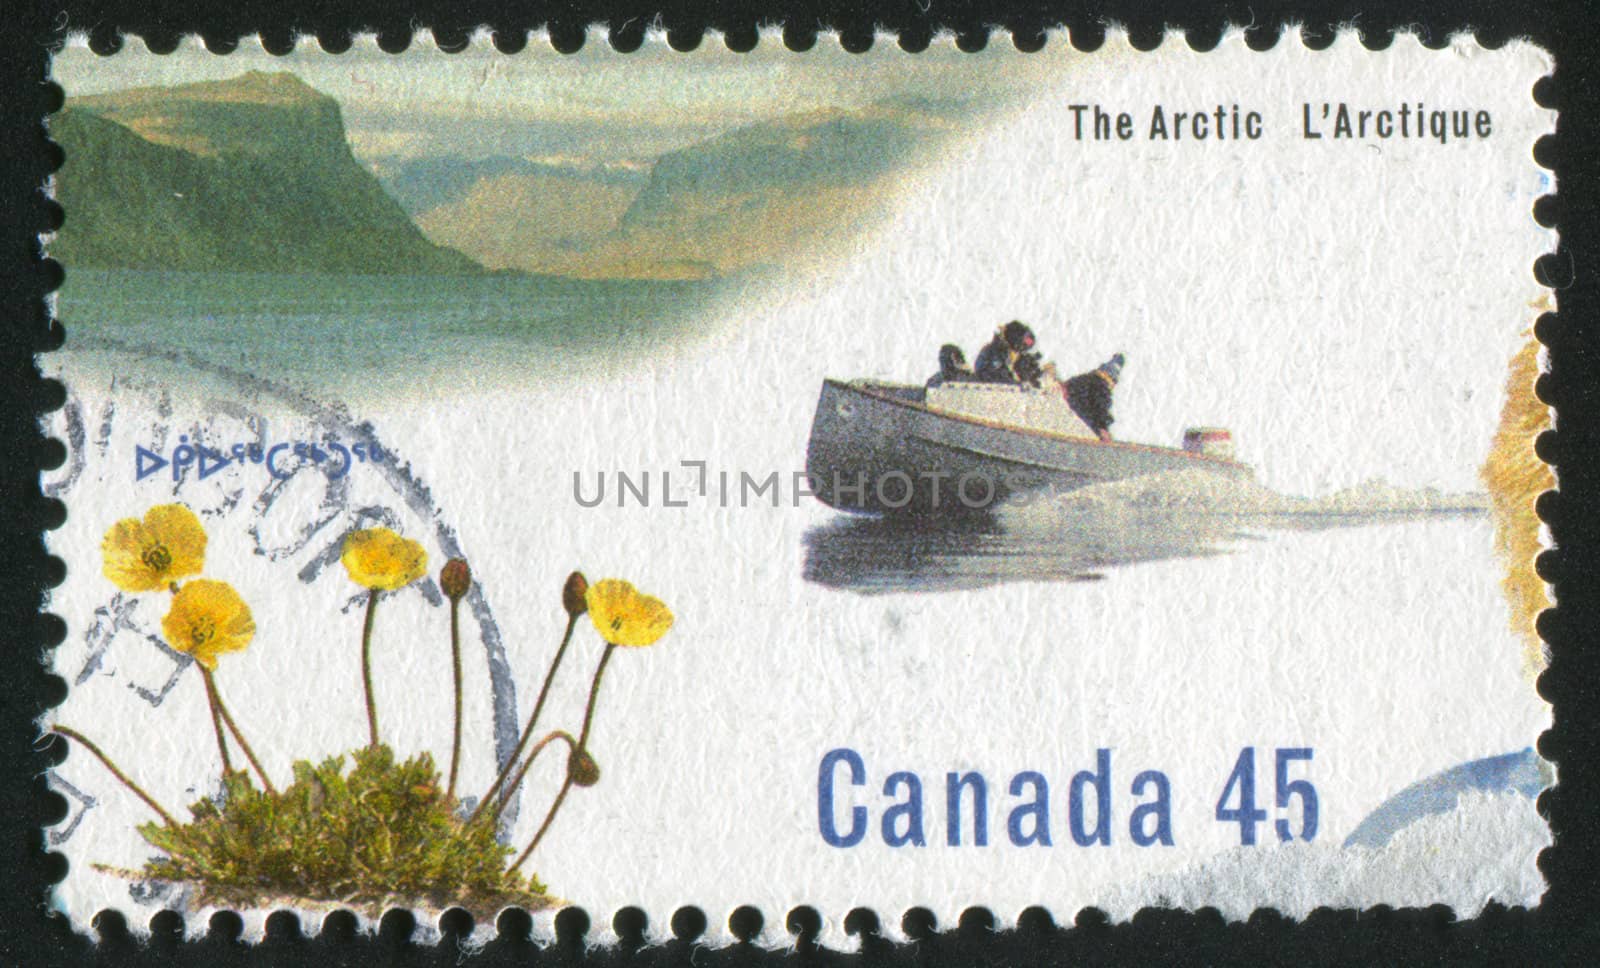 CANADA - CIRCA 1995: stamp printed by Canada, shows cargo canoe, circa 1995